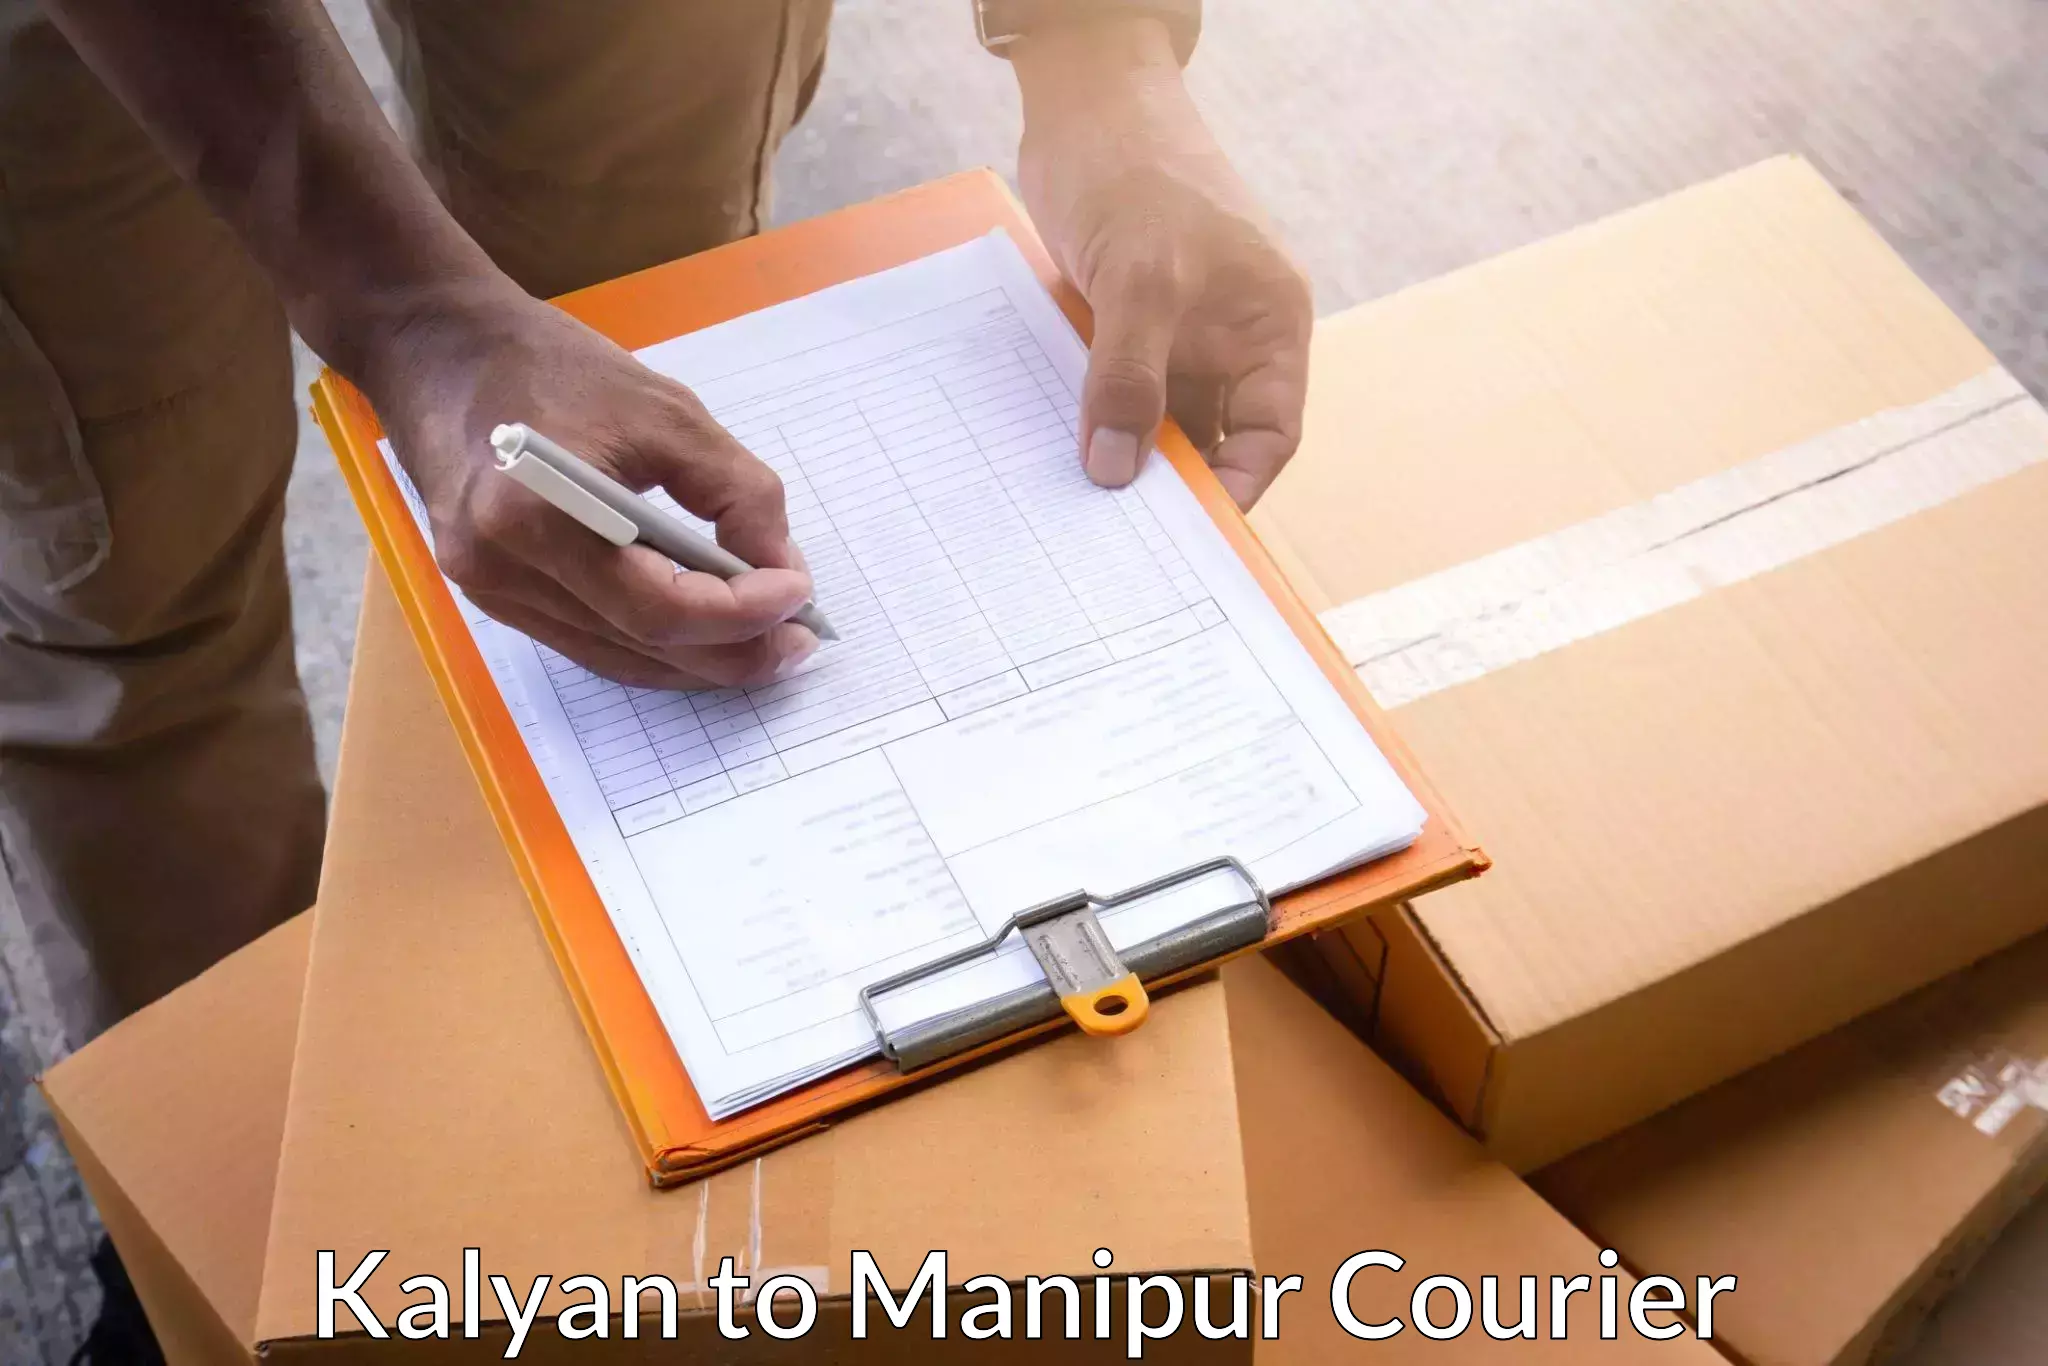 Efficient cargo services Kalyan to Manipur